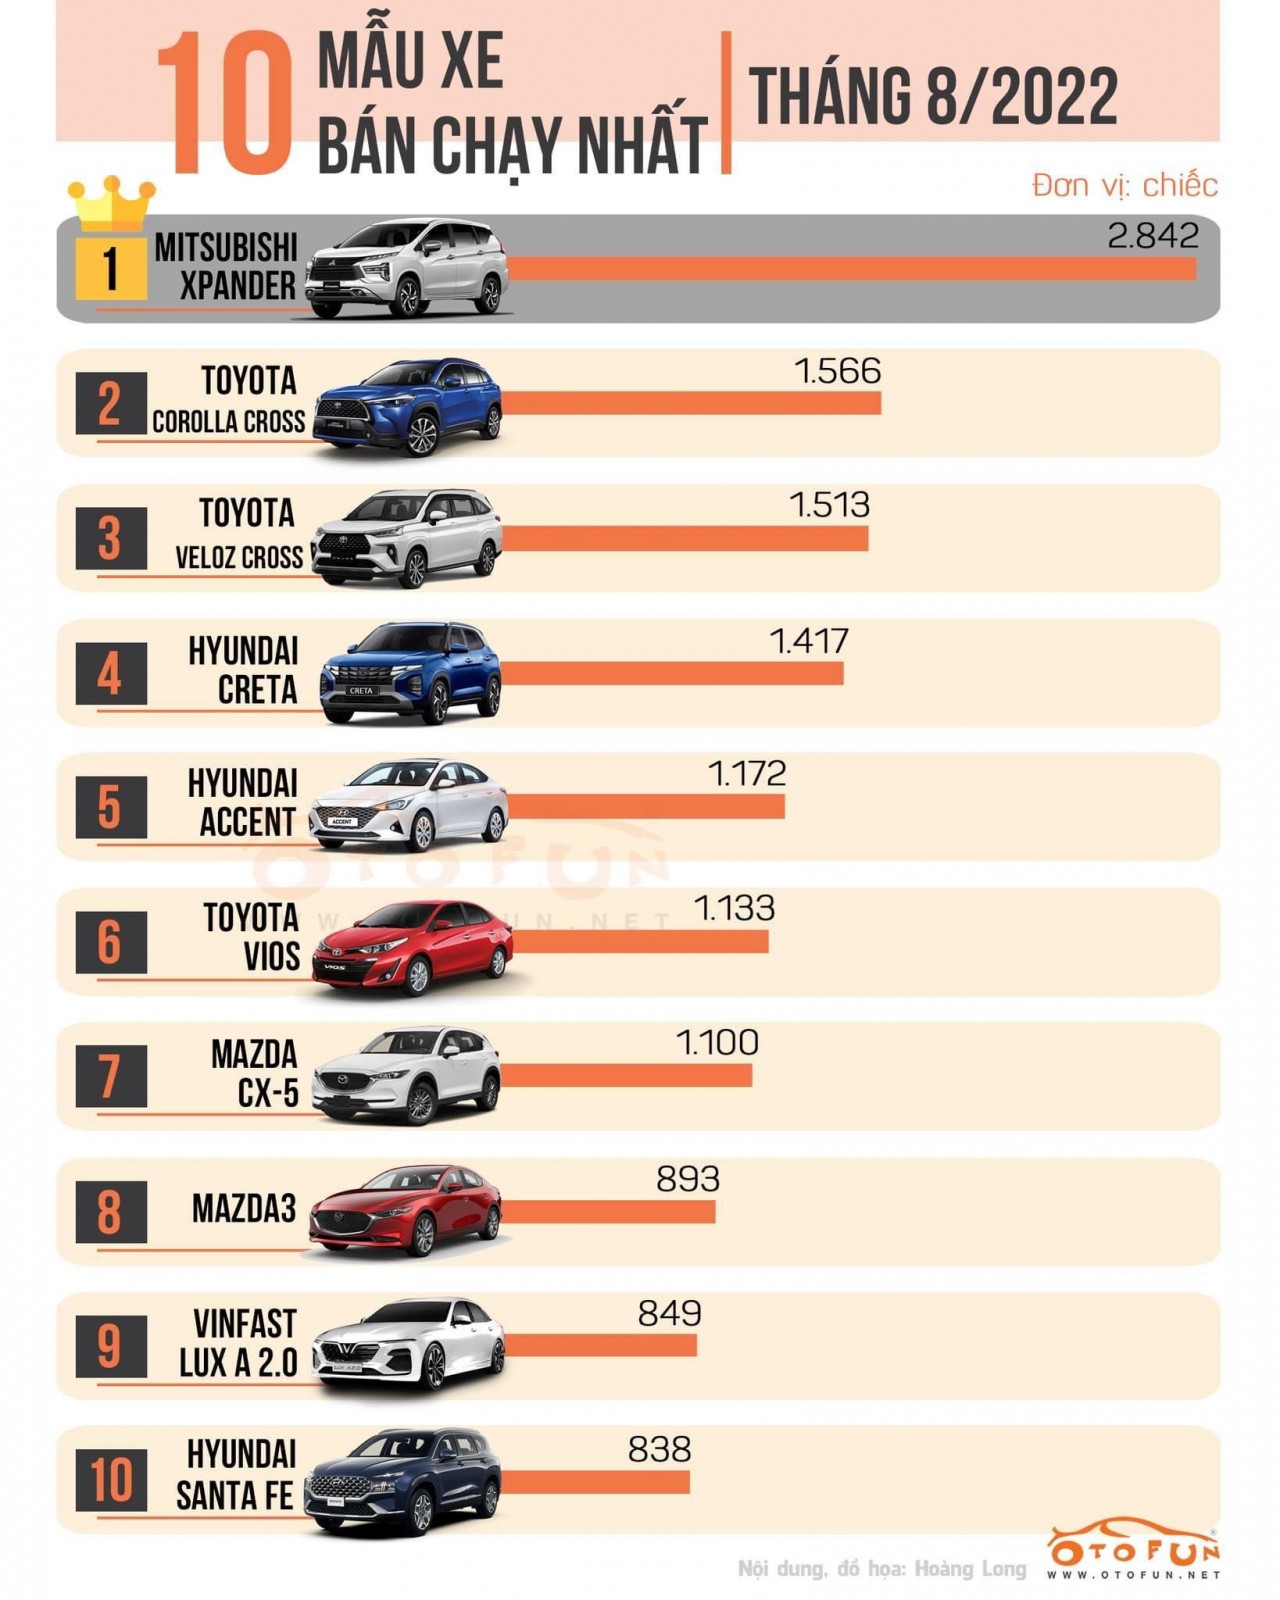 Top 10 xe ô tô bán chạy tháng 8/2022: Mitsubishi Xpander tiếp tục giữ vững ngôi đầu